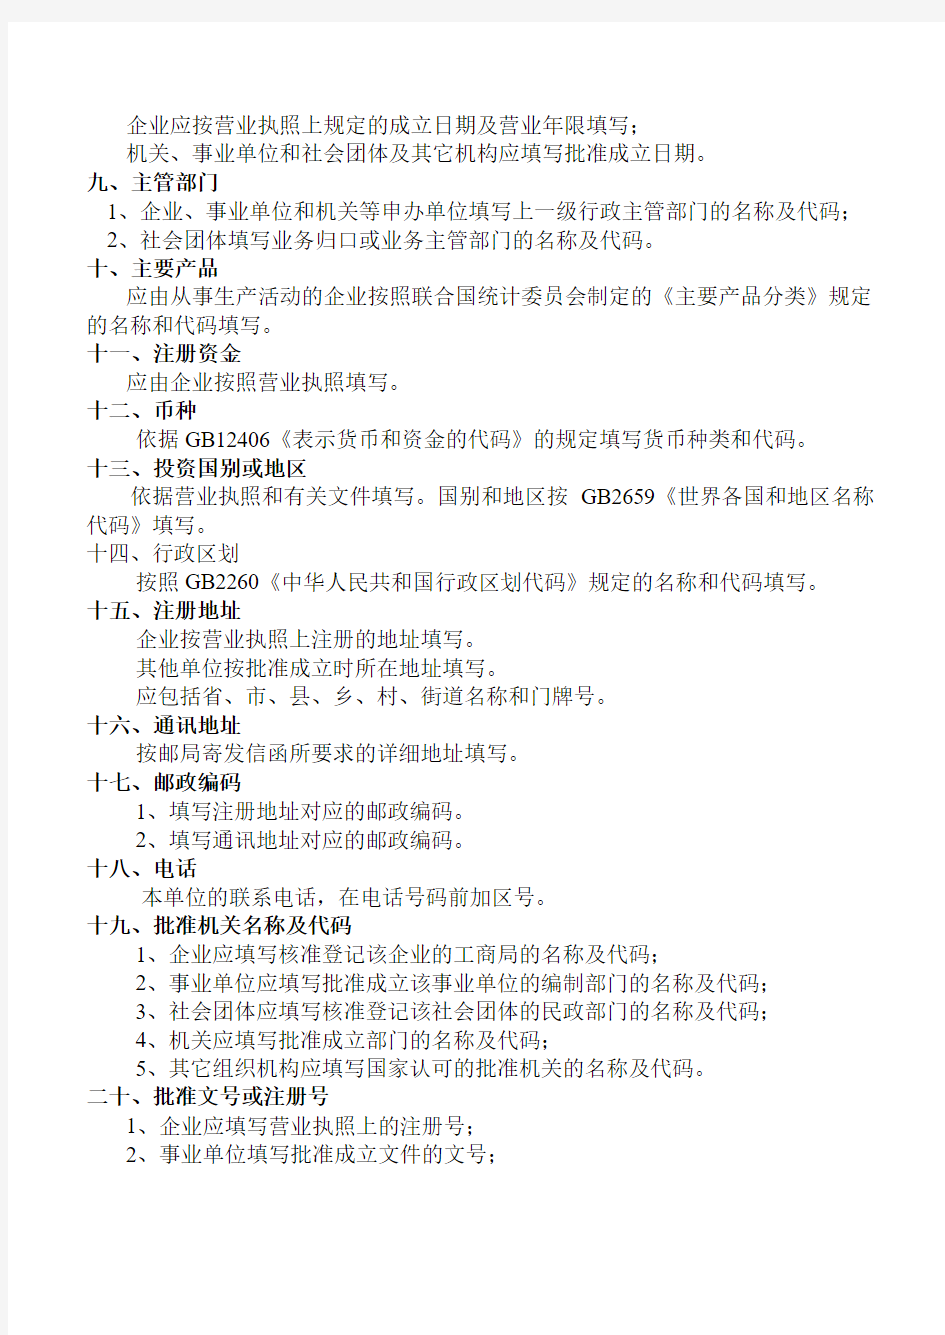 中华人民共和国组织机构代码证申报表